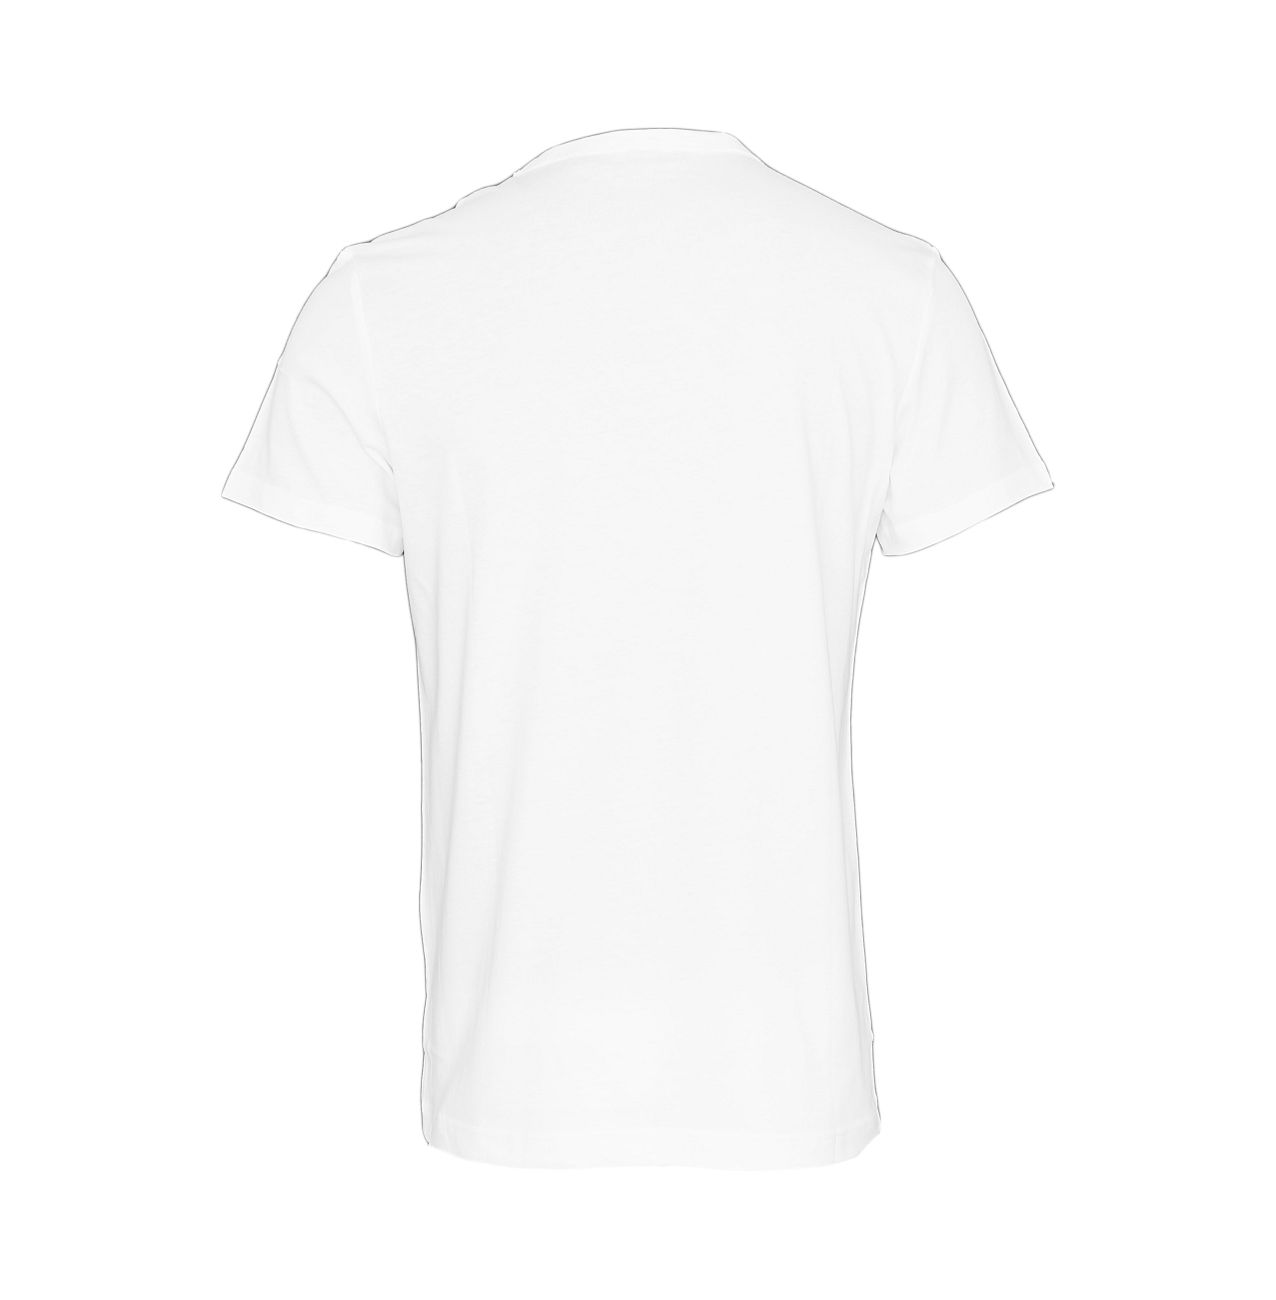 G-Star RAW T-Shirt Holorn rt D08512.8415.110 81 white F18-GST1